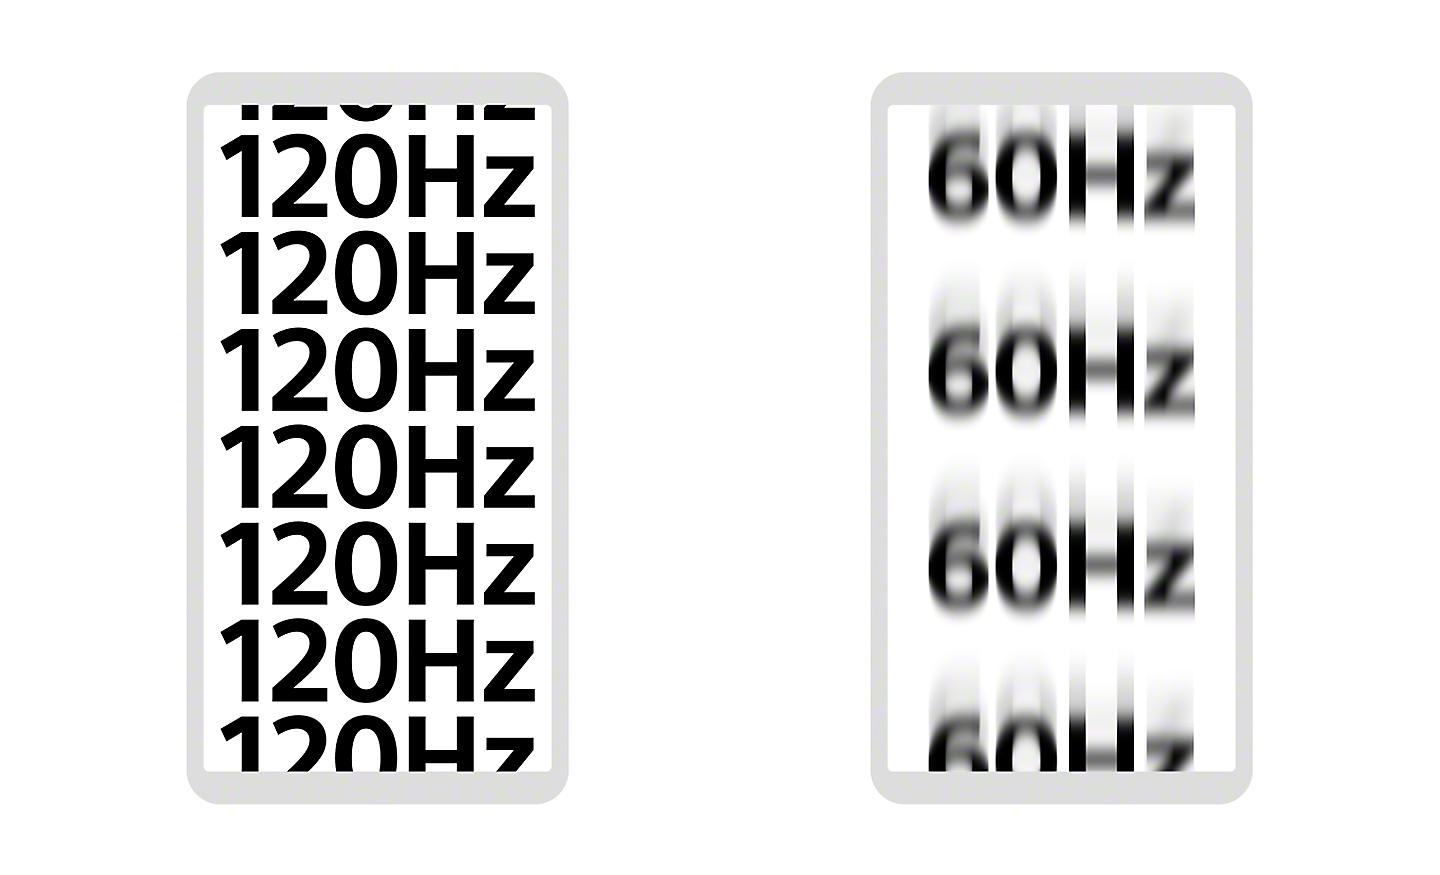 Ilustrație cu două smartphone-uri - pe unul se afișează "120Hz" de mai multe ori cu un text clar definit, pe celălalt se afișează 60 Hz cu un text neclar